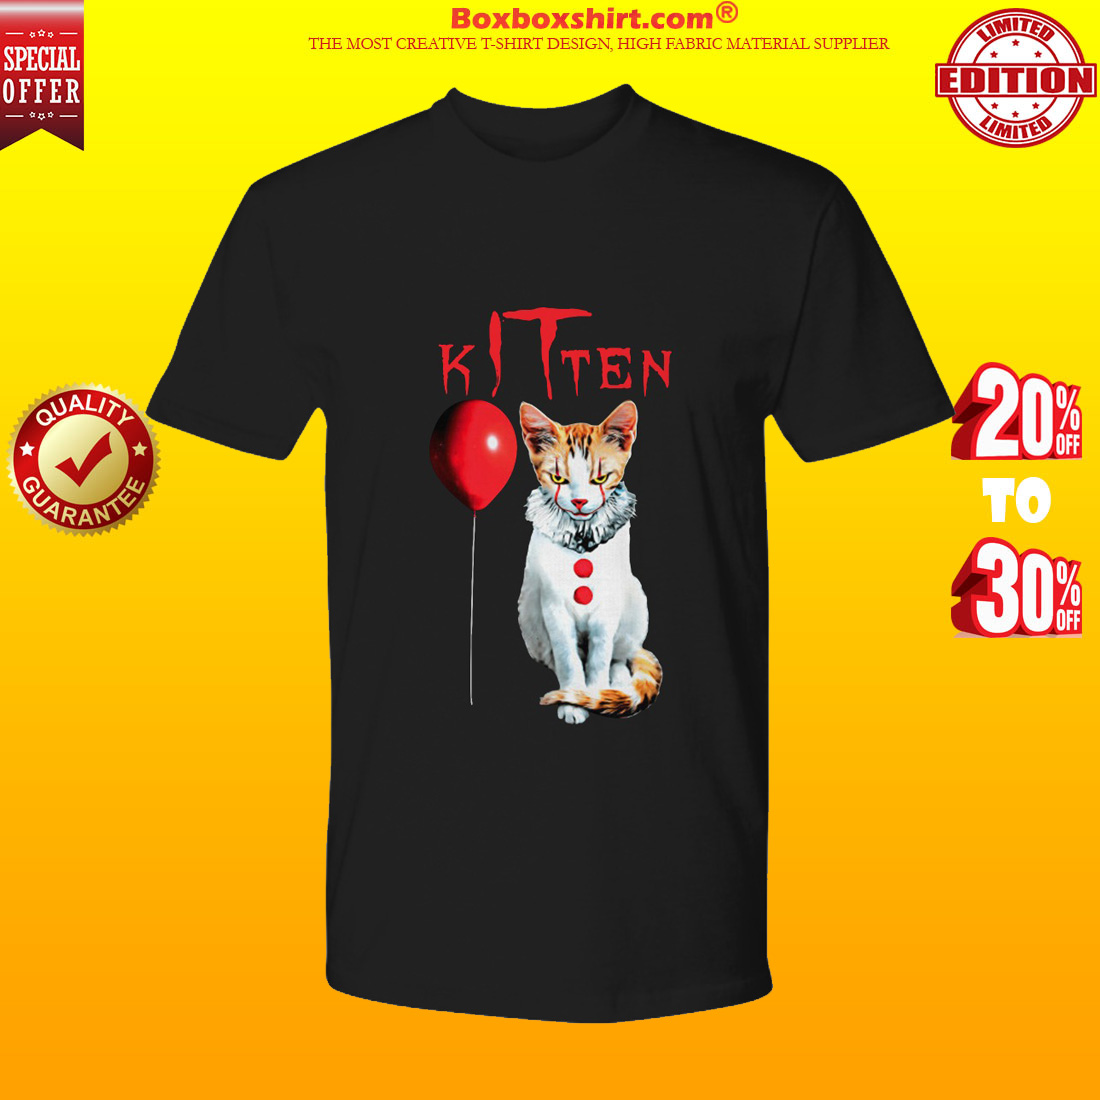 IT kitten cat premium tee shirt